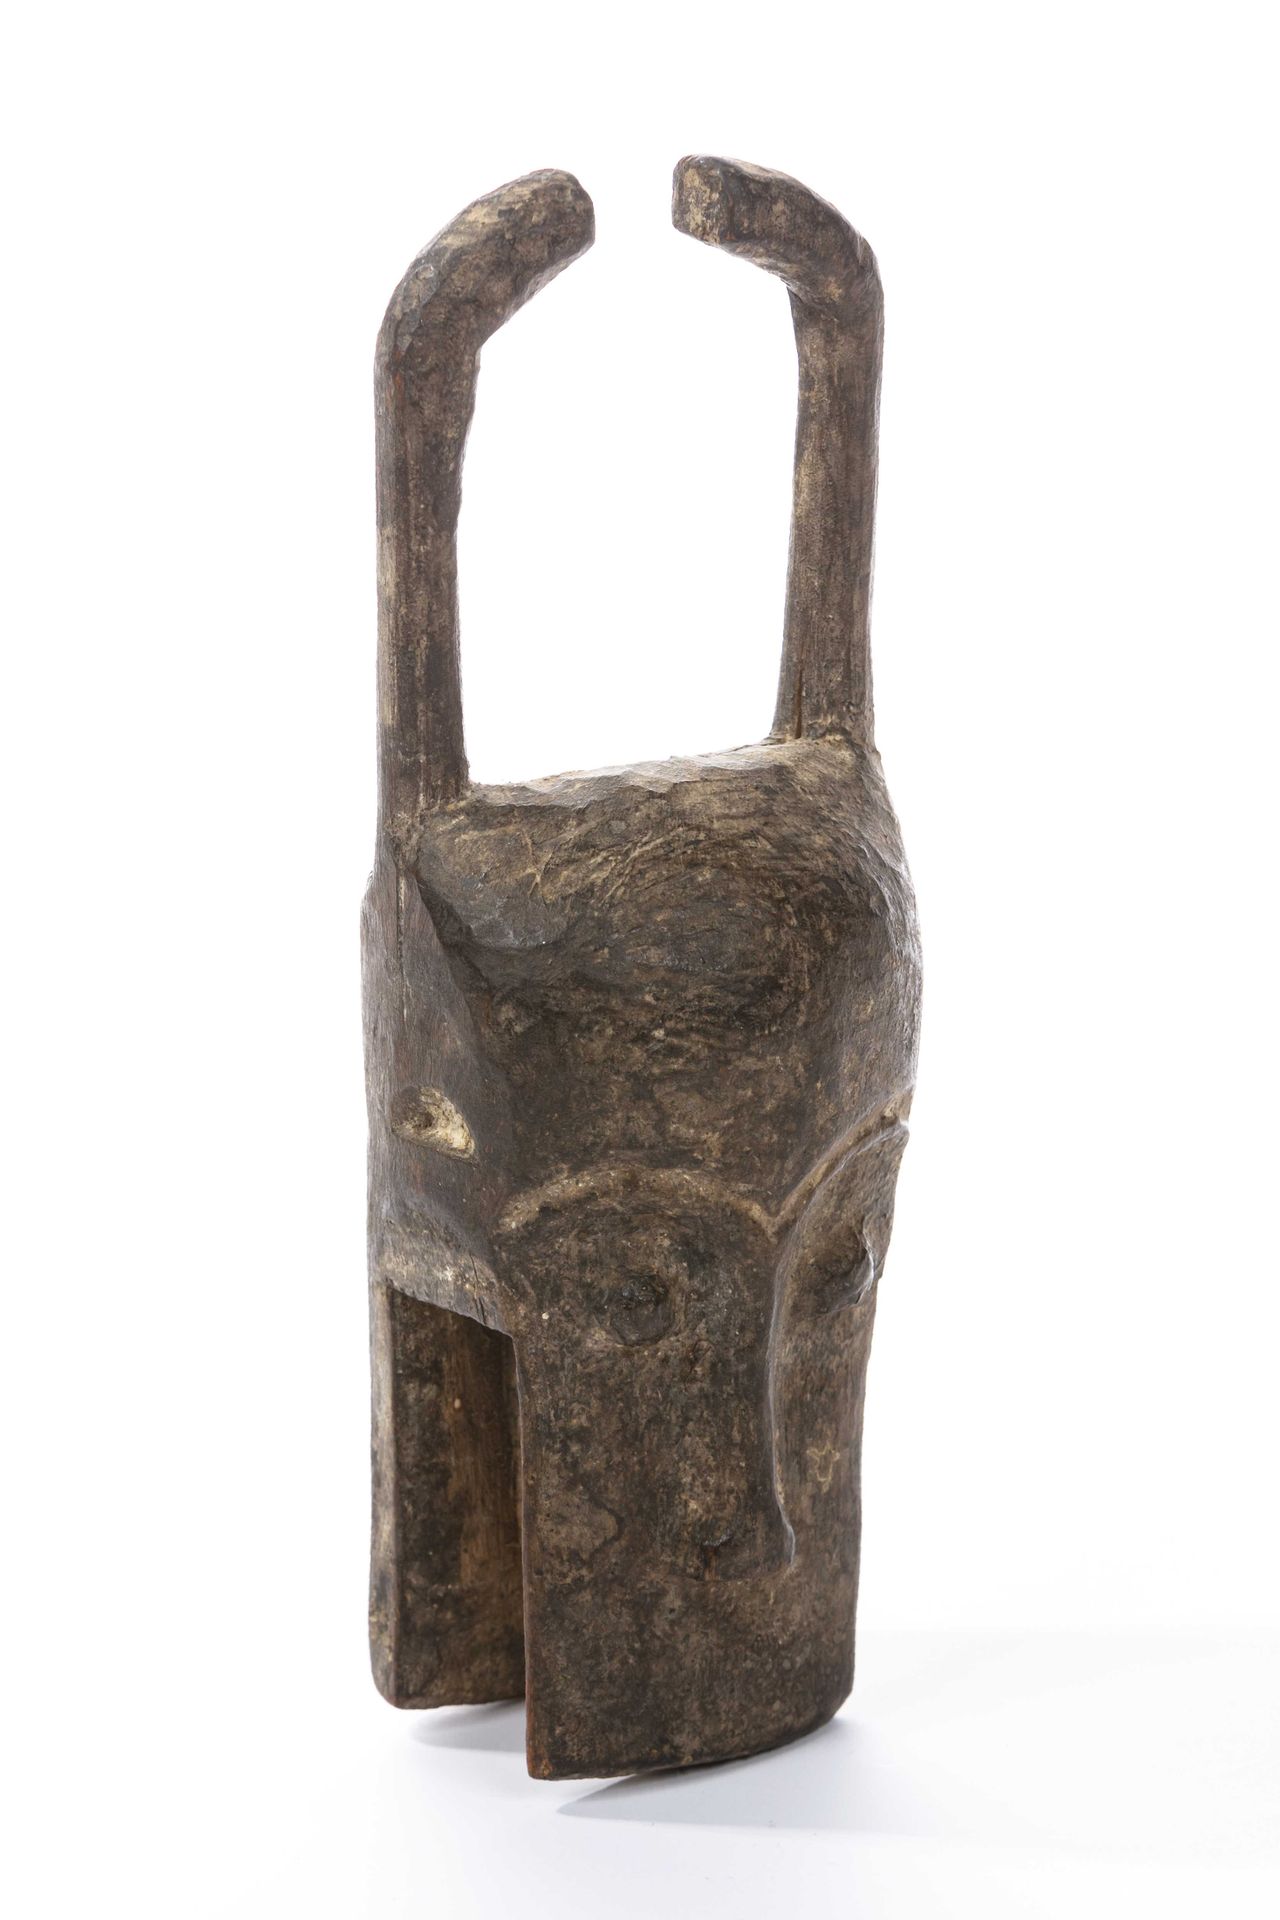 Null Maschera stile Baoule/ Yaoure Costa d'Avorio 
Legno 
H: 19 cm
Descrizione: &hellip;